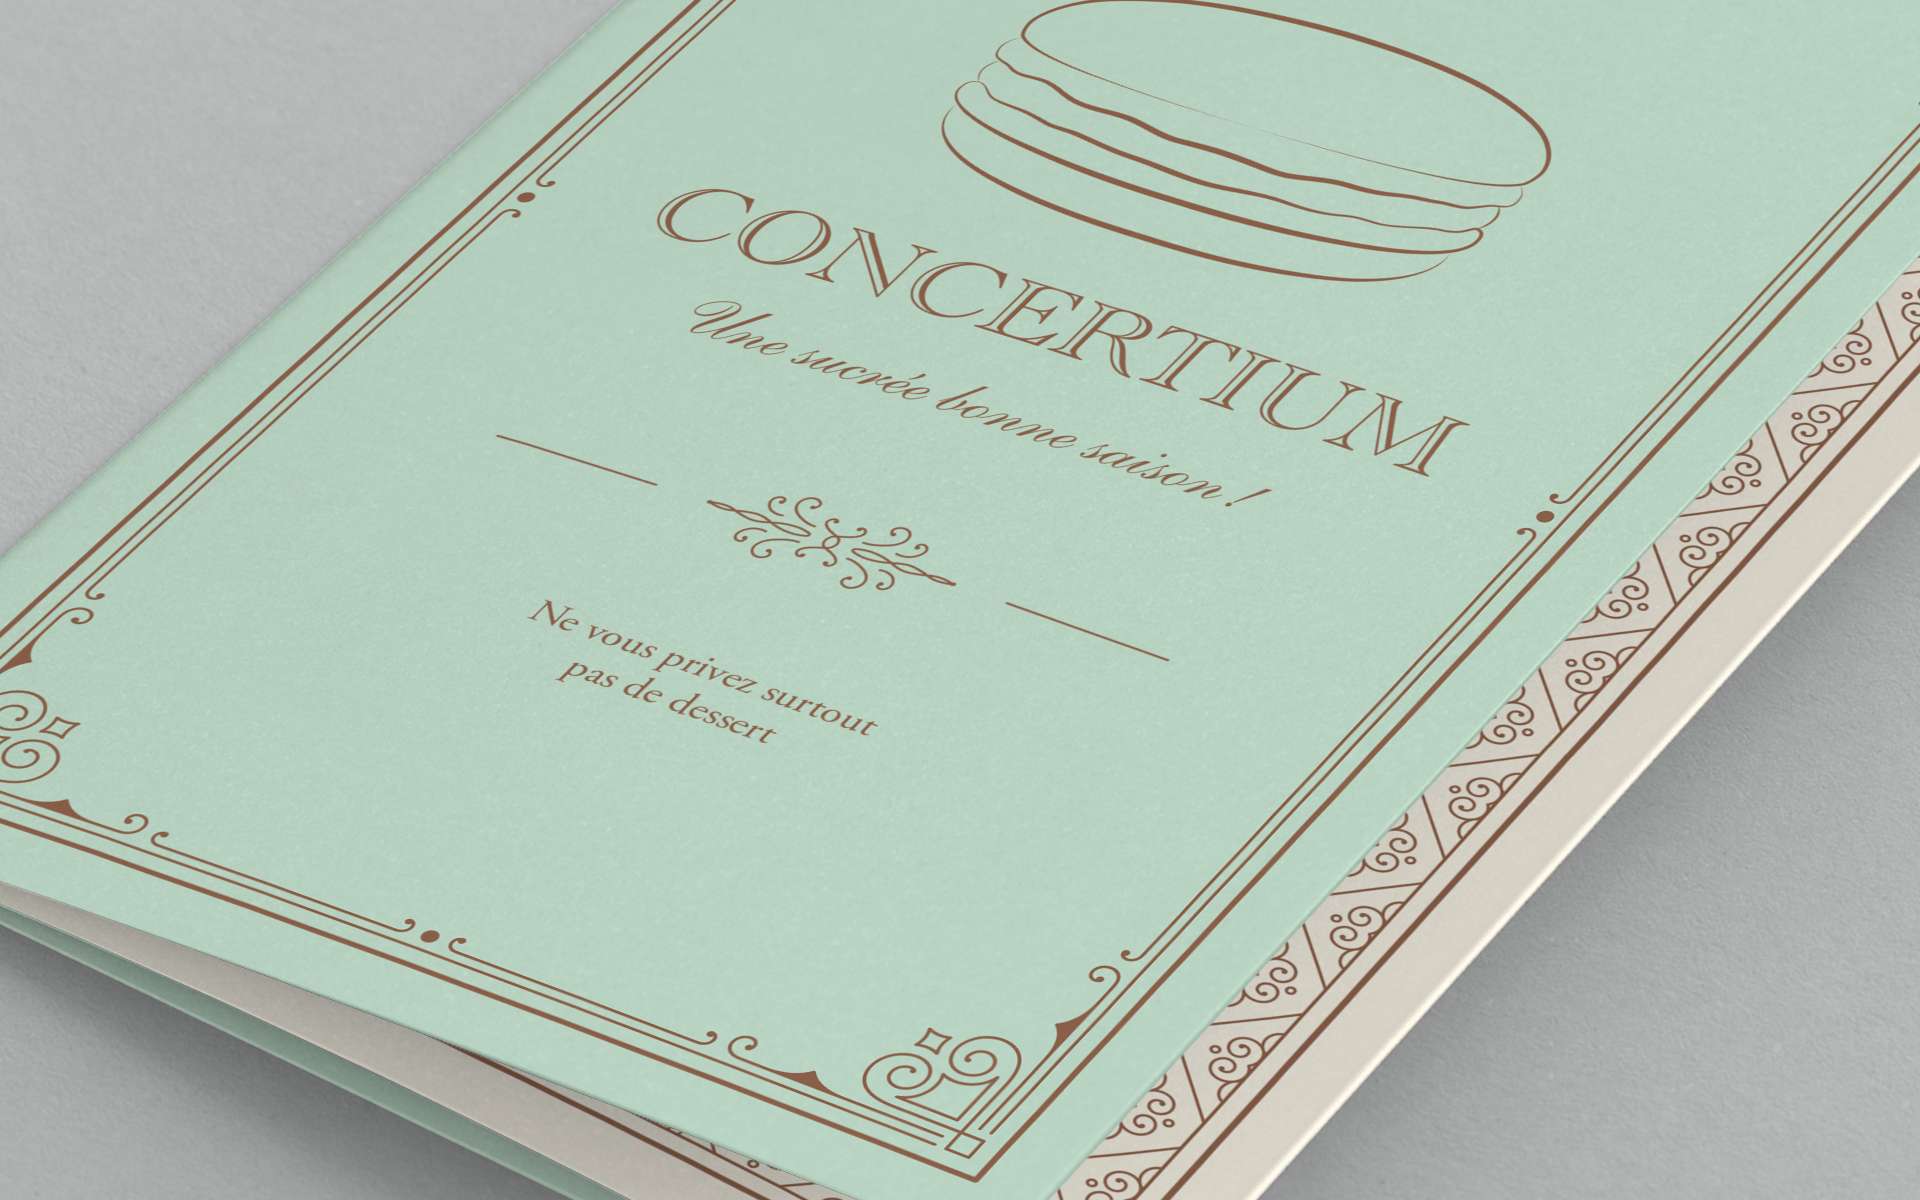 Concertium - Identité et promotion